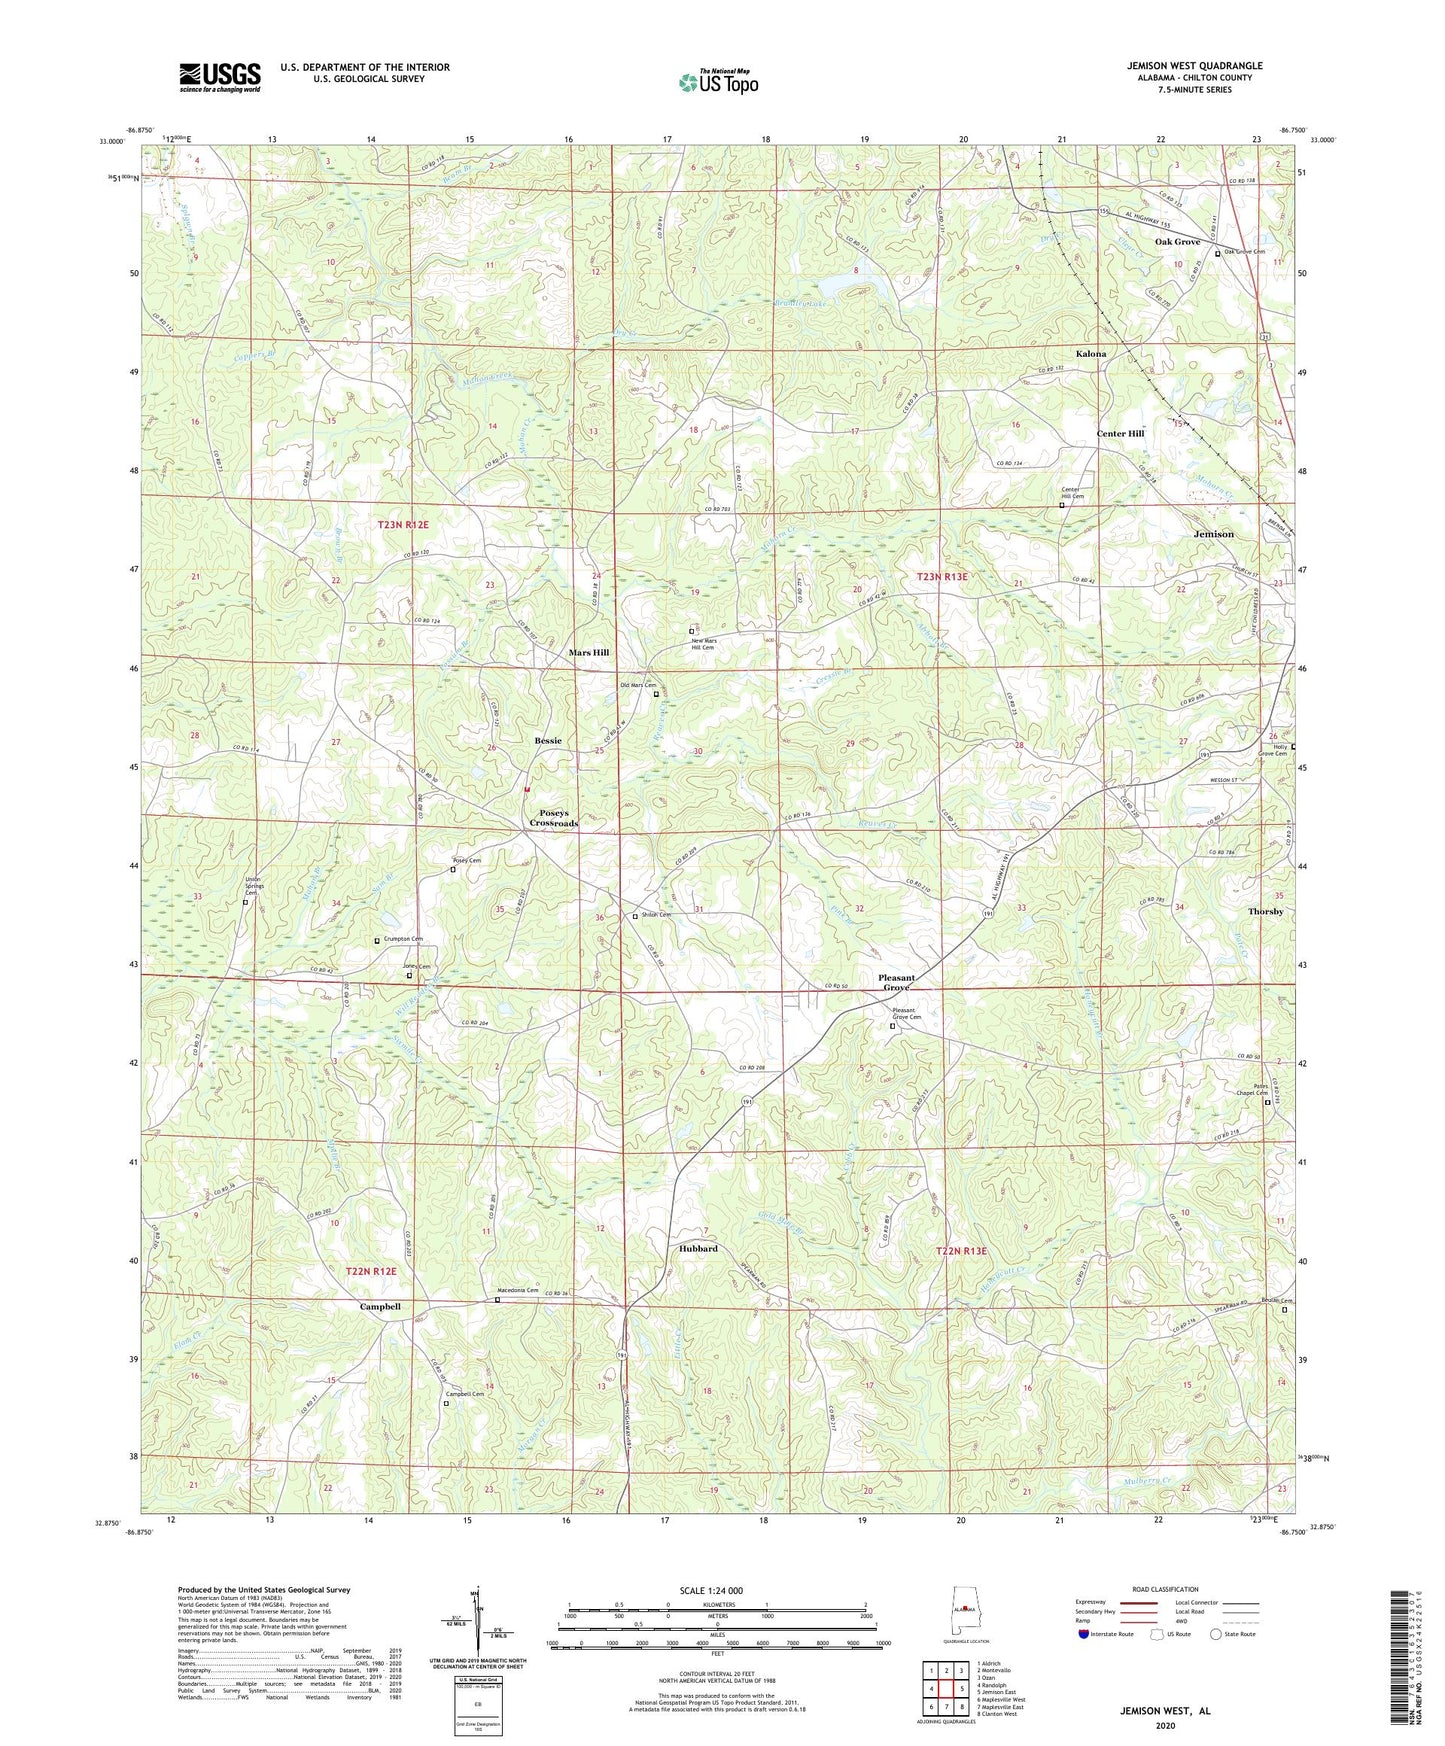 Jemison West Alabama US Topo Map Image